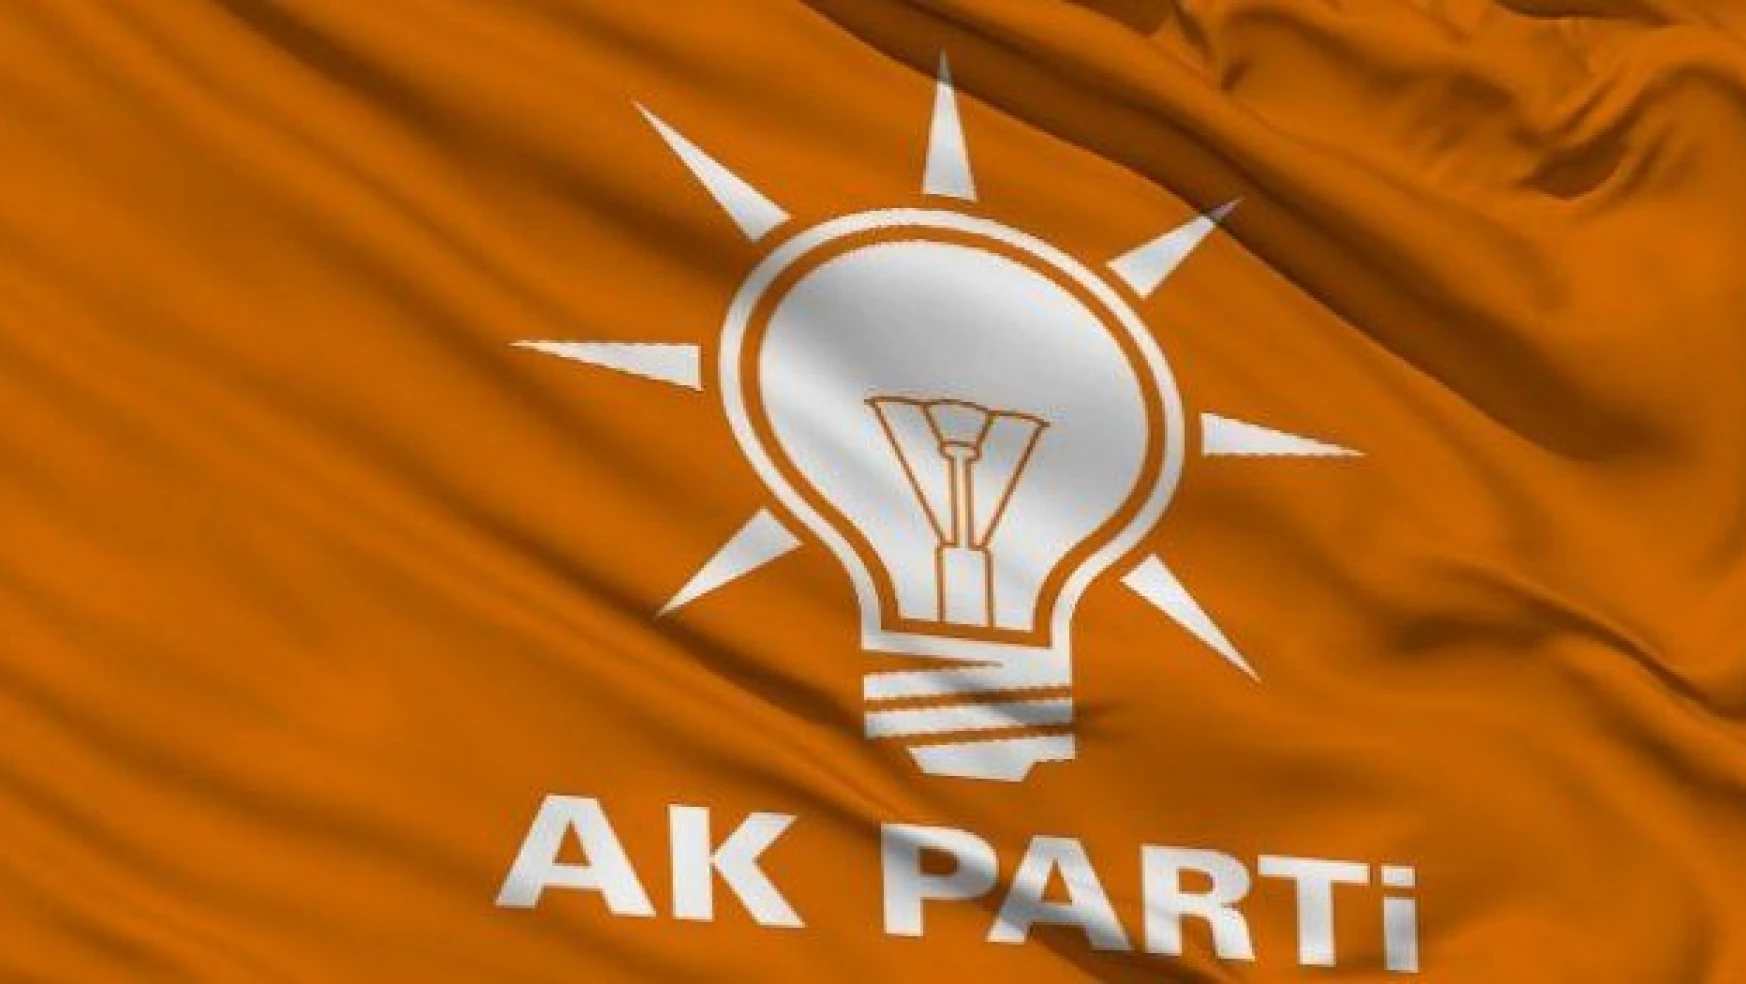 İşte AK Parti'nin 2035 planı!